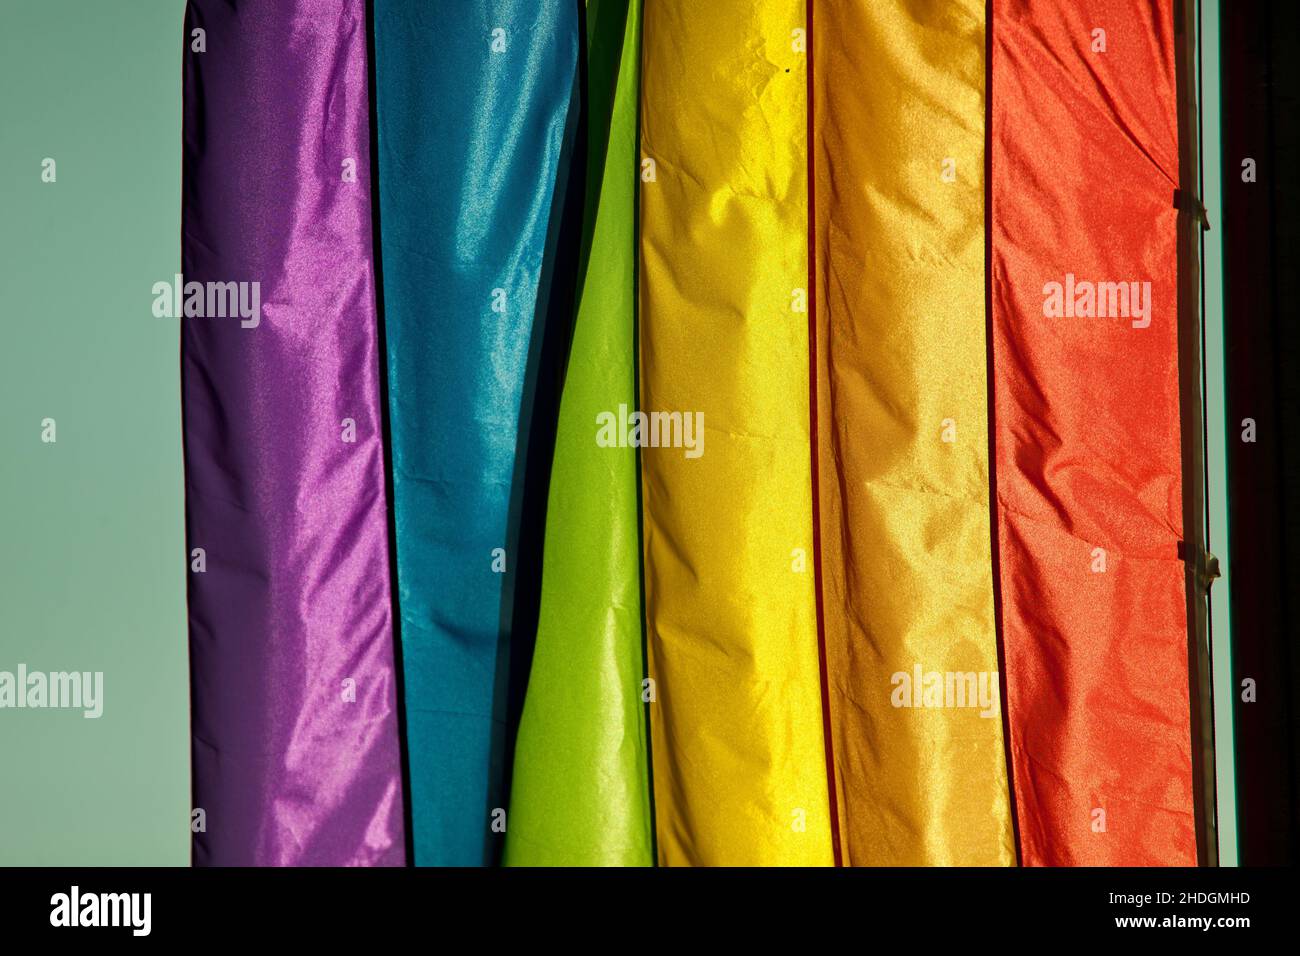 rainbow-flag-rainbow-flags-stock-photo-alamy